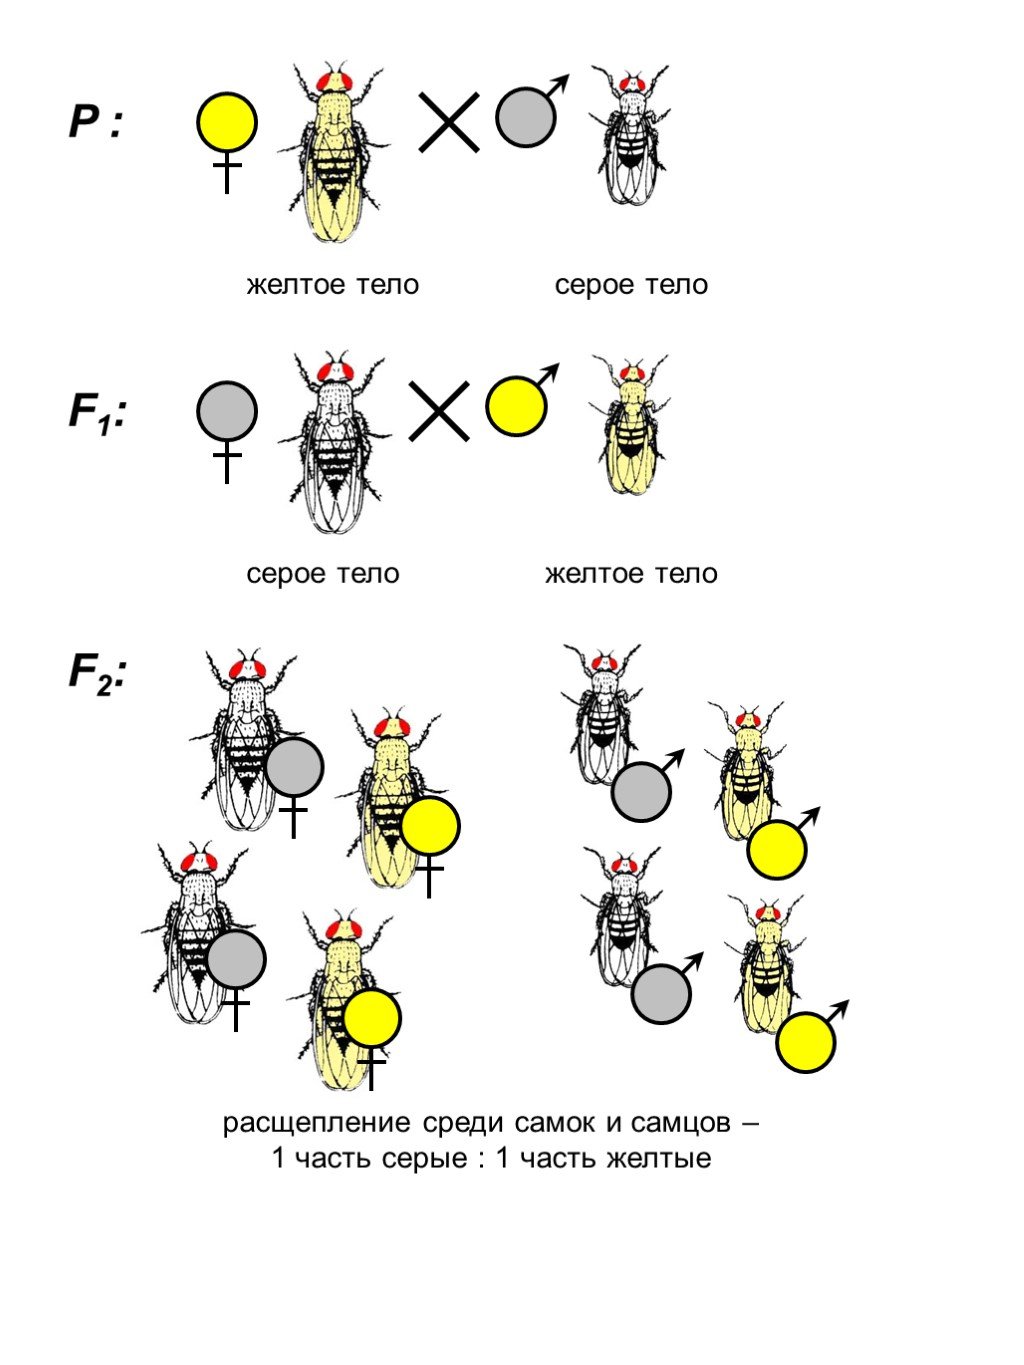 Генетика пола 10 класс биология презентация. Наследование пола у пчел. Генетика пола у пчел. Генетика пола схема. Как наследуется пол у пчел.